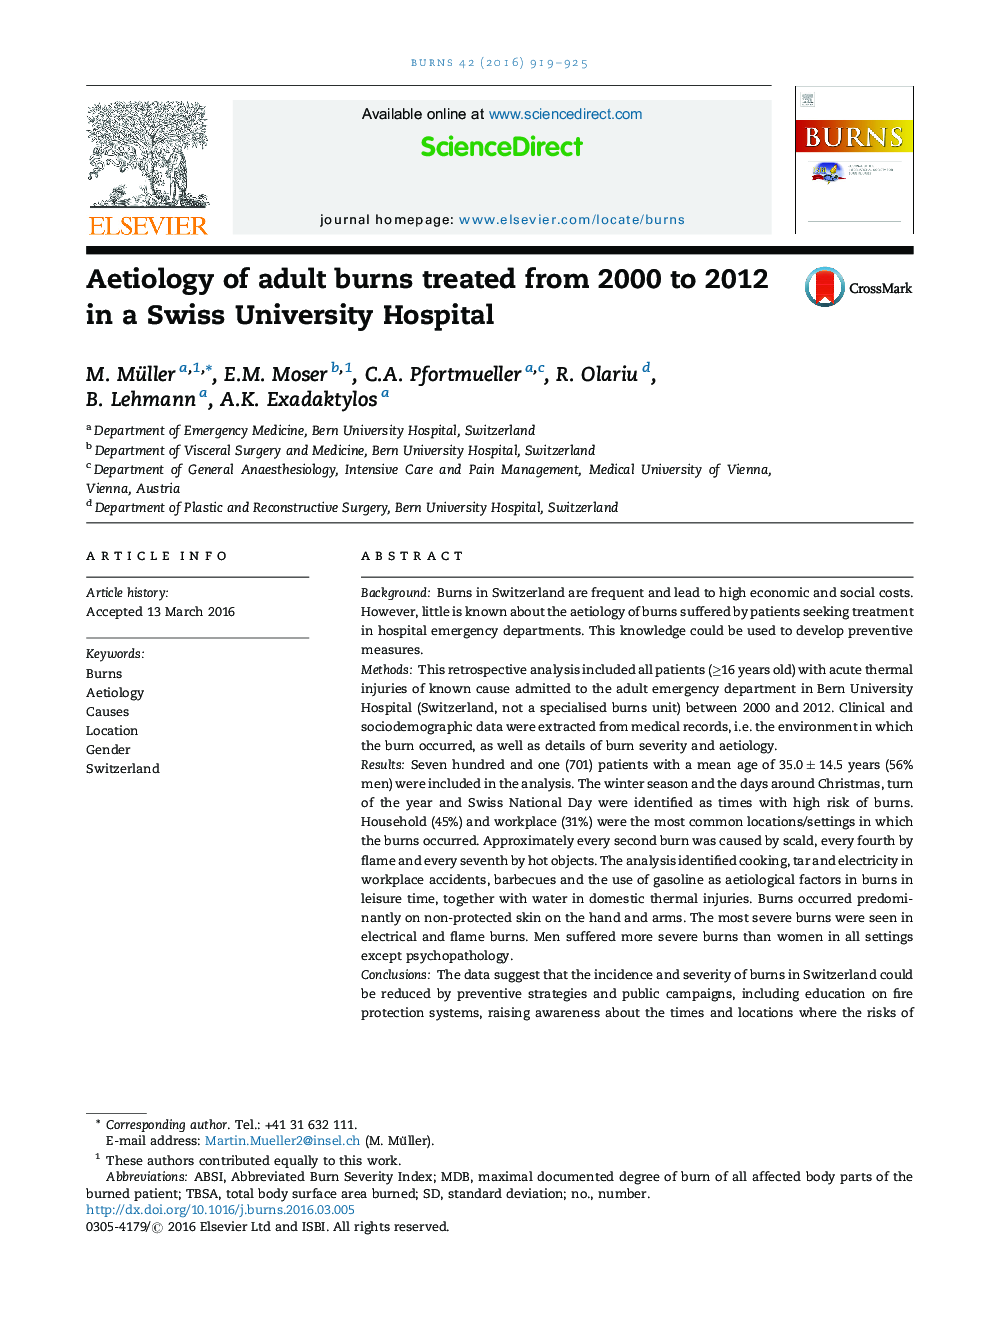 اتیولوژی سوختگی های بزرگسالان از سال 2000 تا 2012 در یک بیمارستان دانشگاه سوئیس